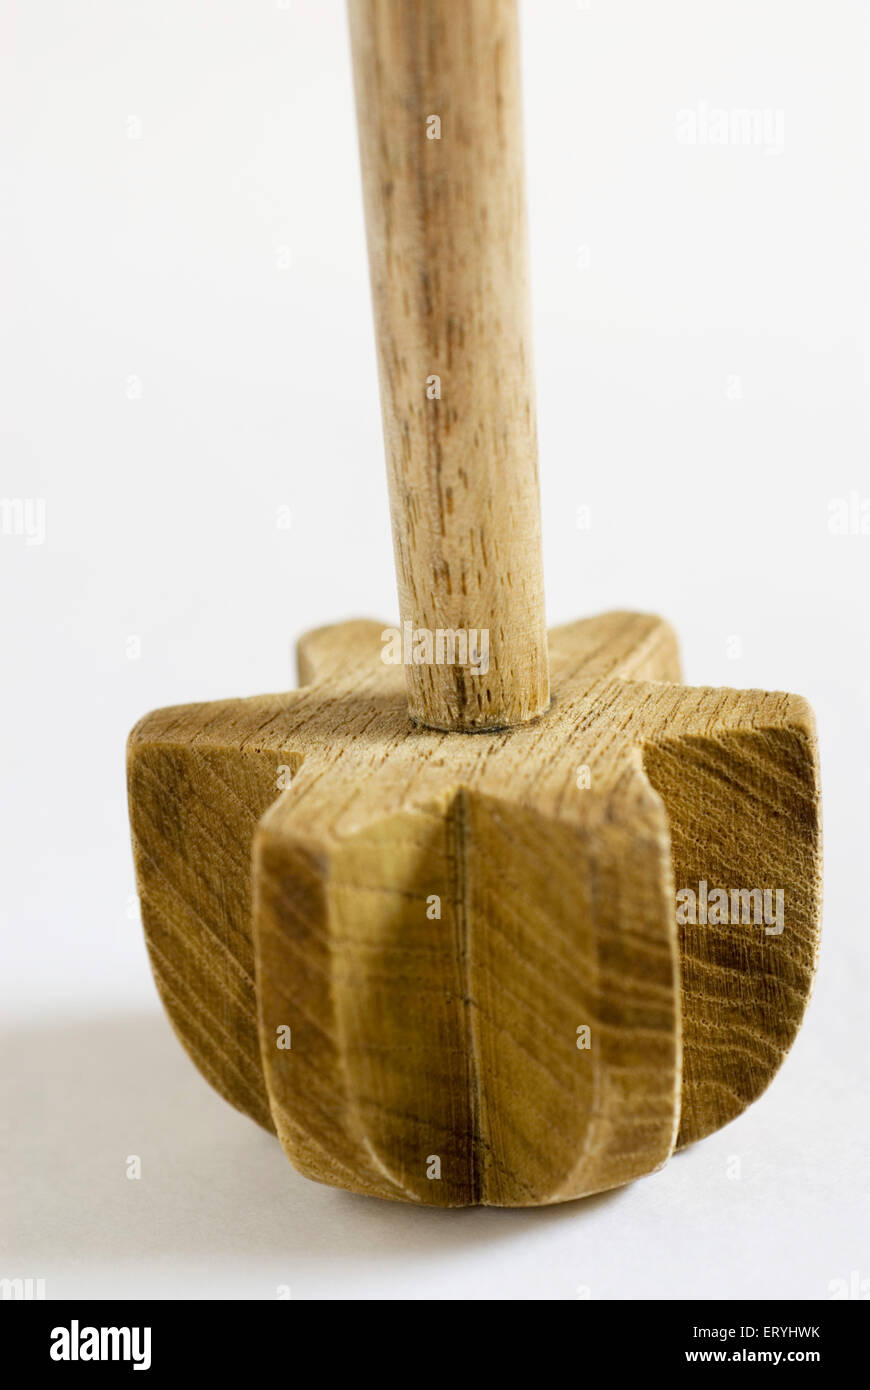 Churner in legno , utensile da cucina su sfondo bianco Foto Stock